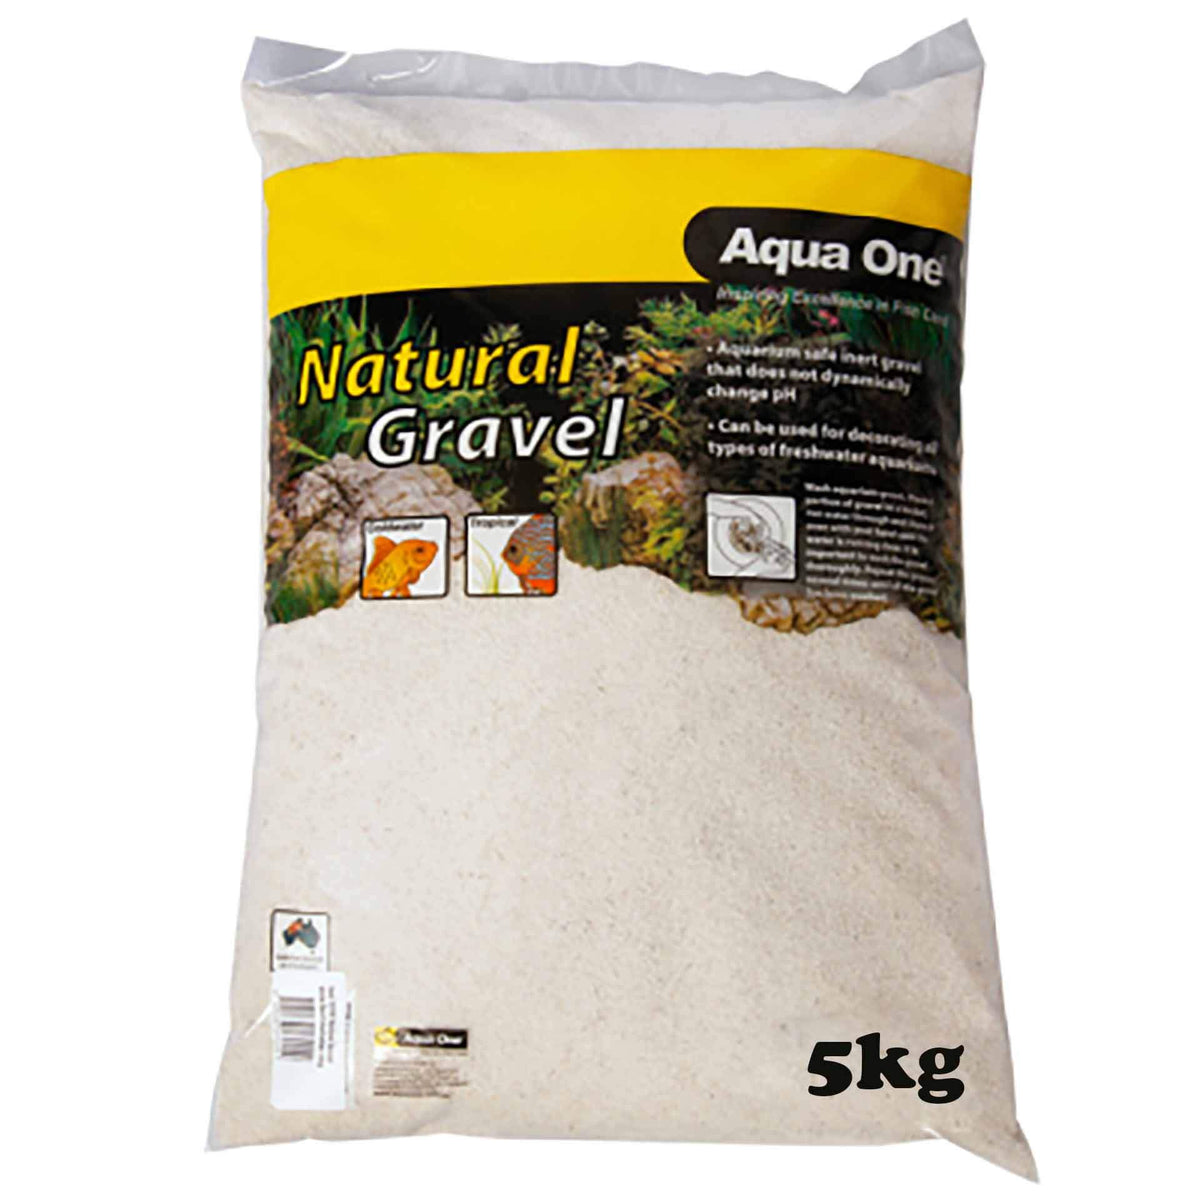 Aqua One Natural Gravel White Sand Australian 5kg (White) **